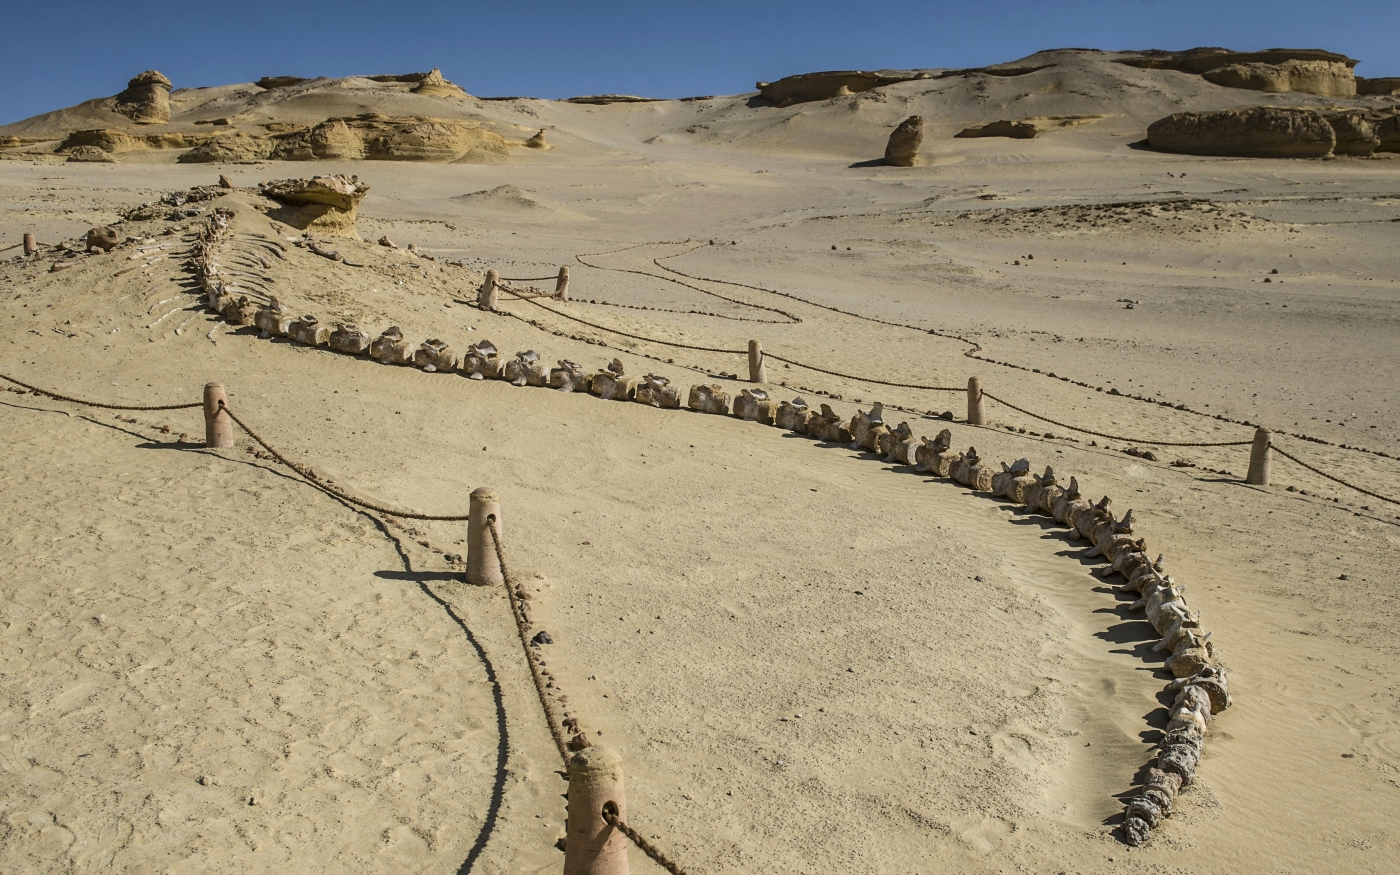 Squelette de baleine sur le site touristique du Wadi al-Hitan, dans le désert égyptien (AFP)